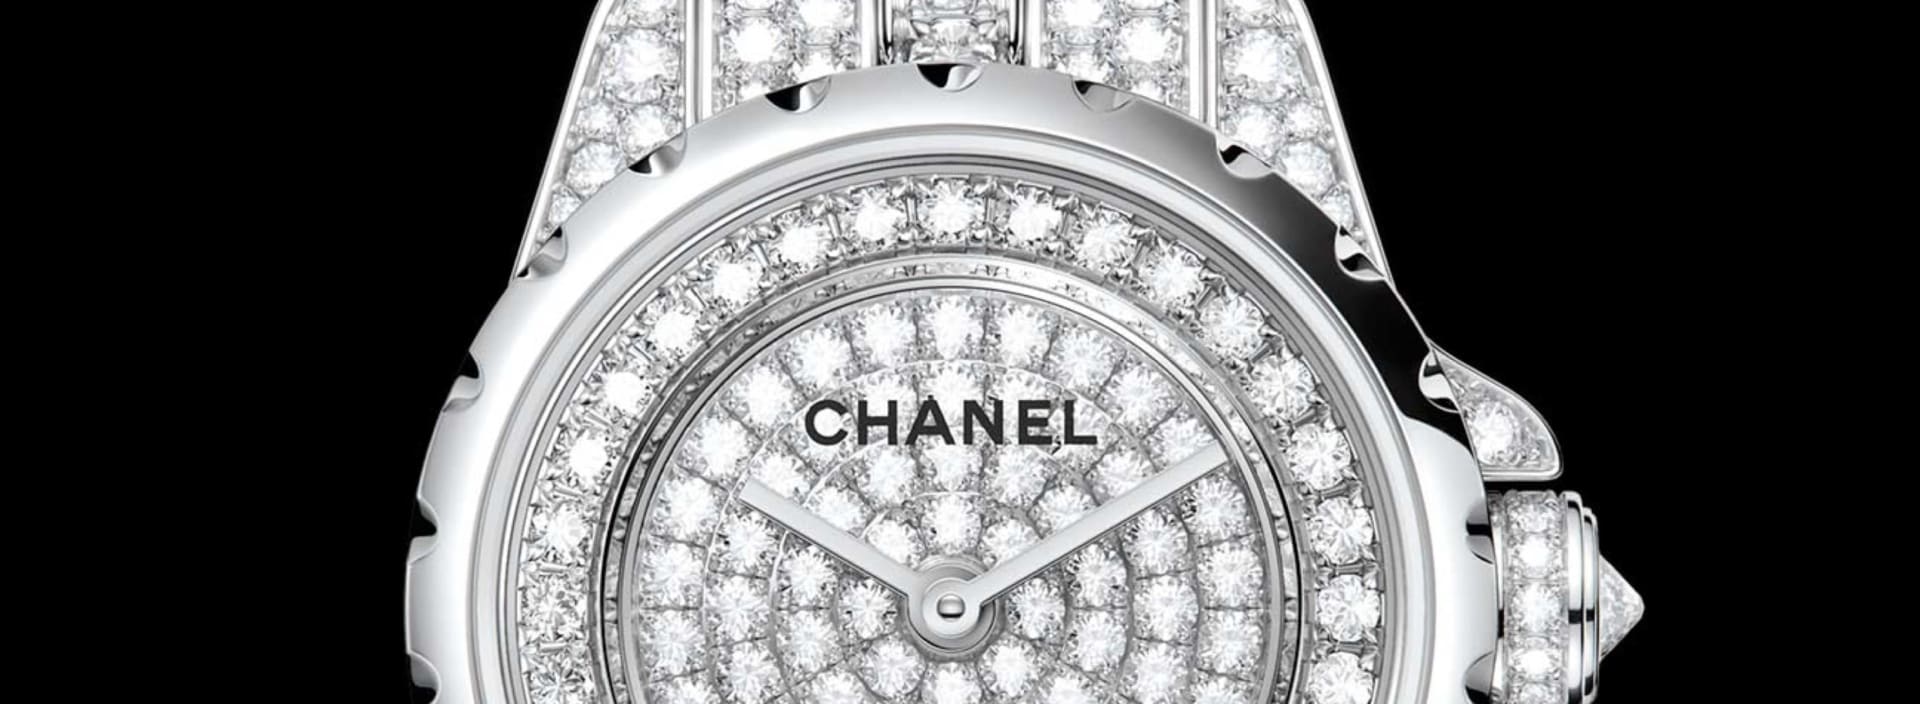 Chanel, Chopard и другие бренды  ушли от Baselworld и сделали свою выставку часового искусства